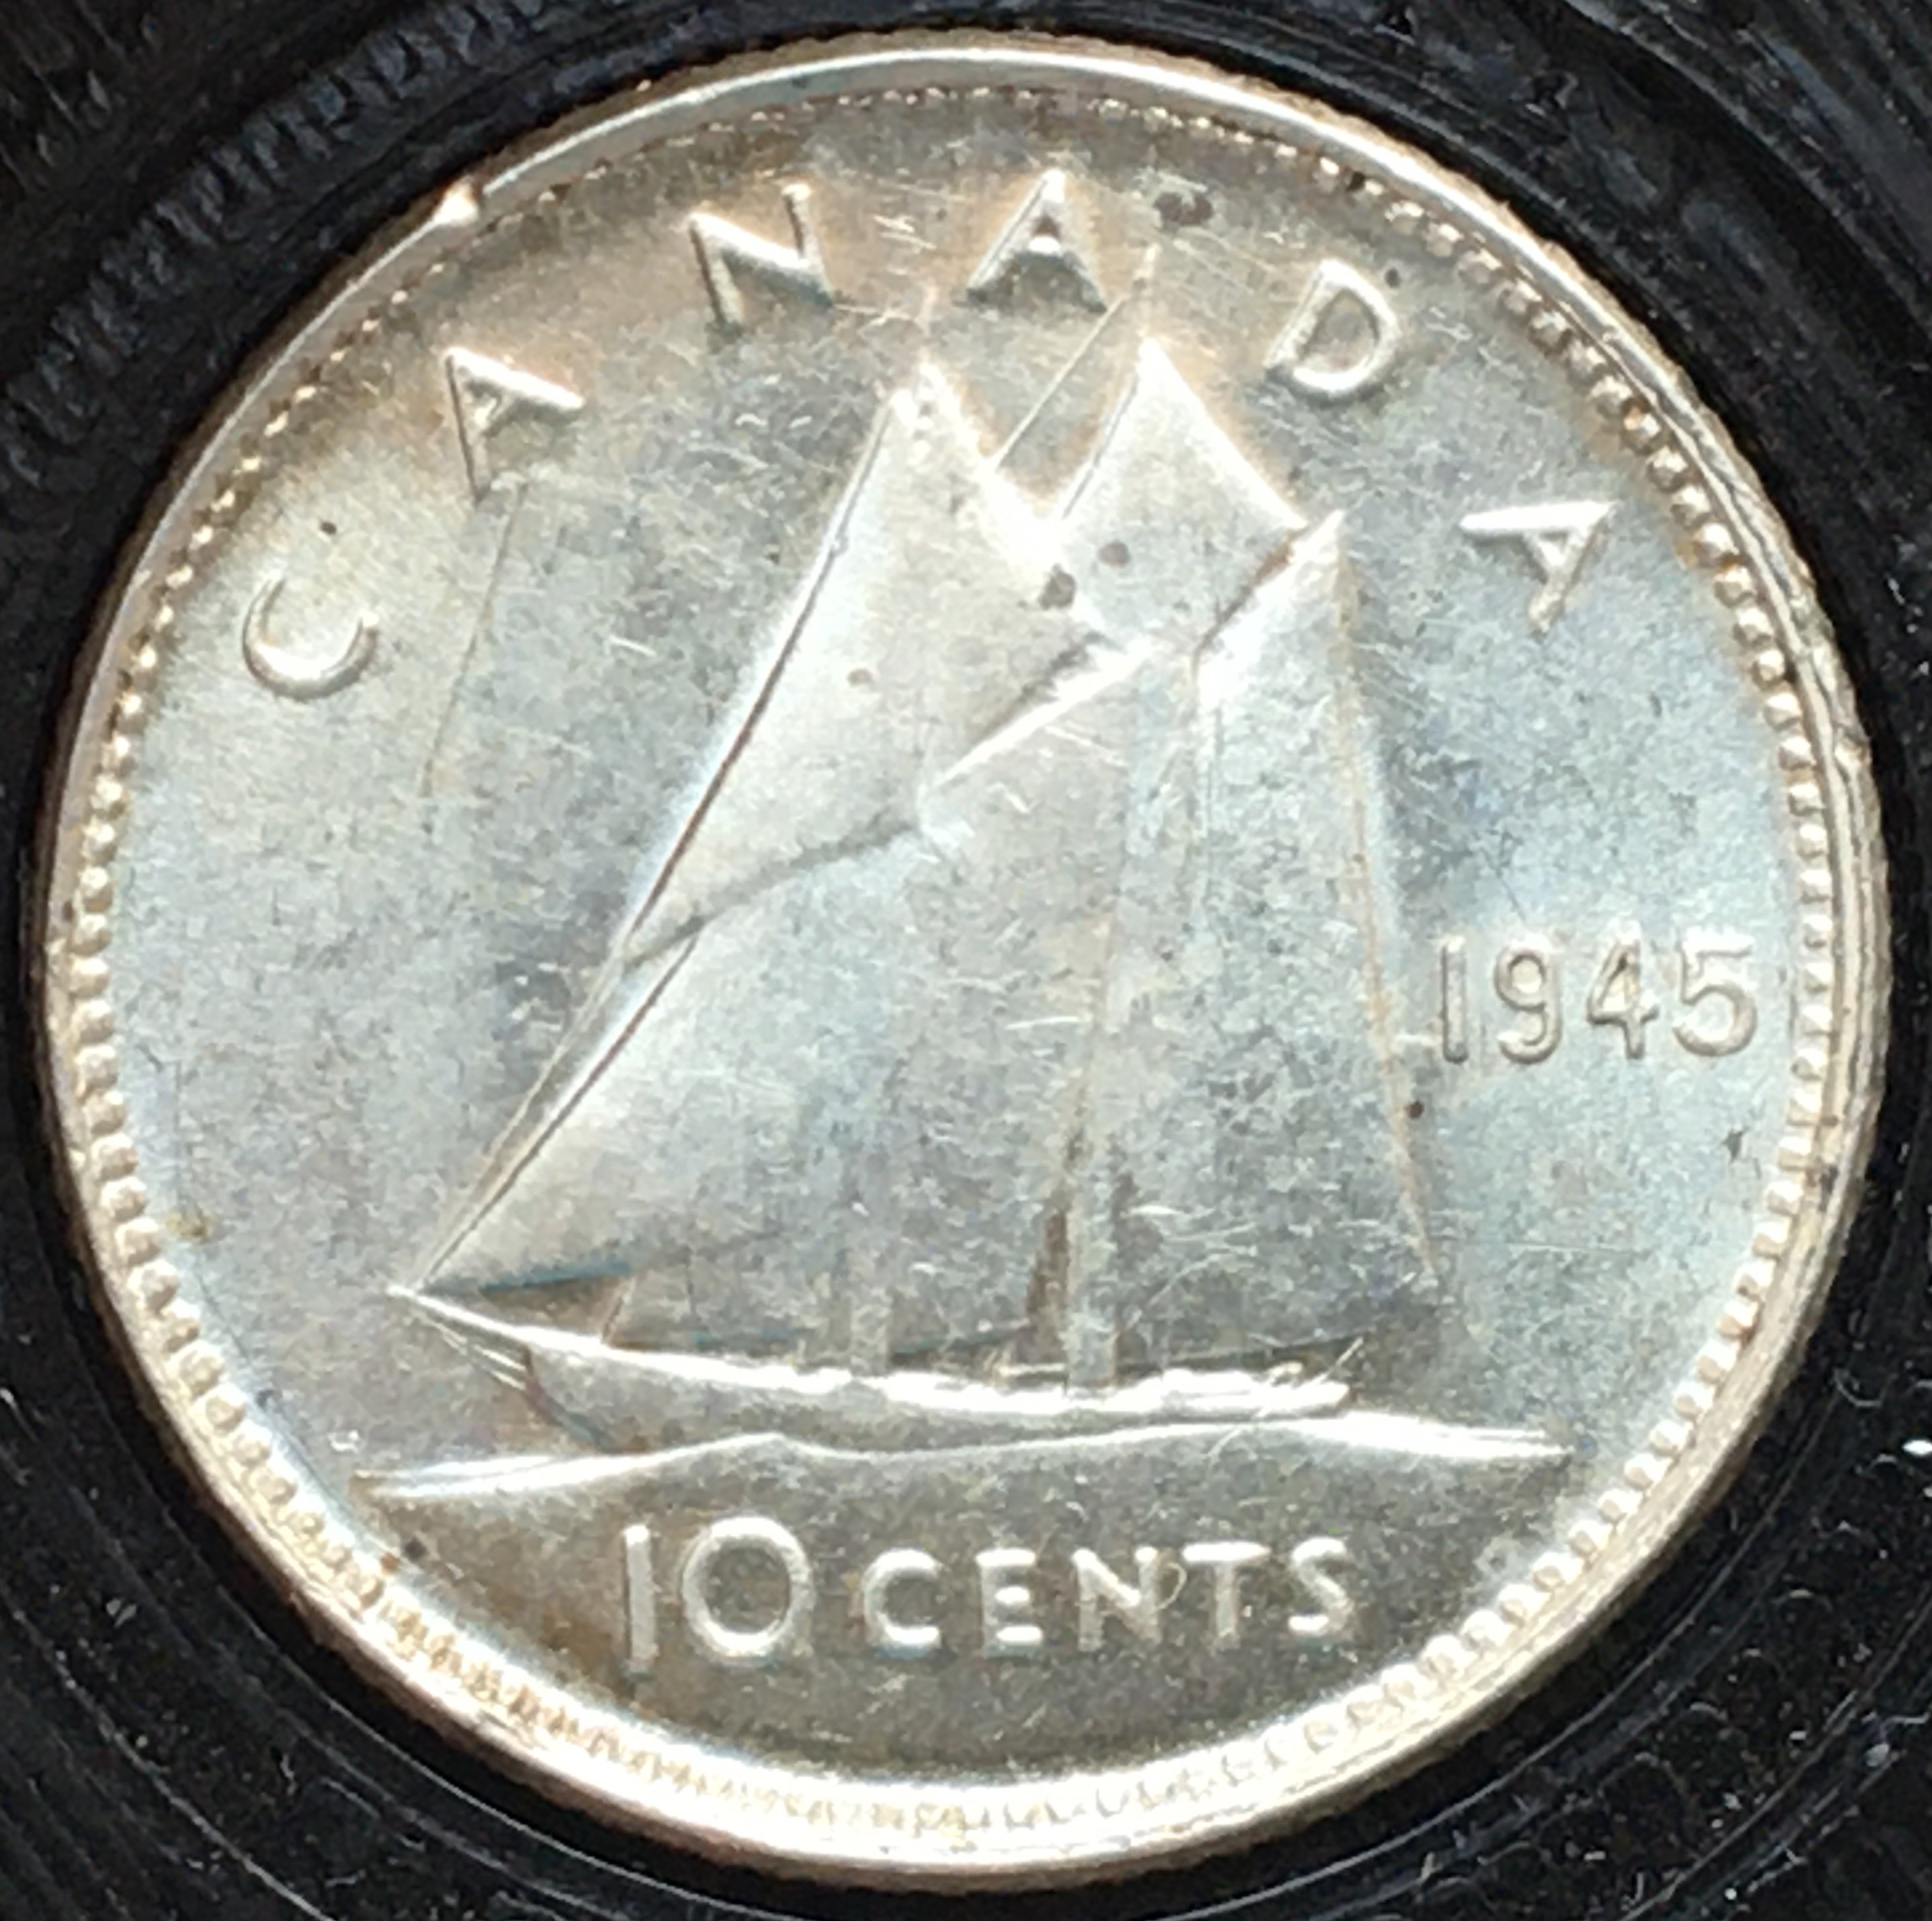 10 cents 1945 revers.JPG